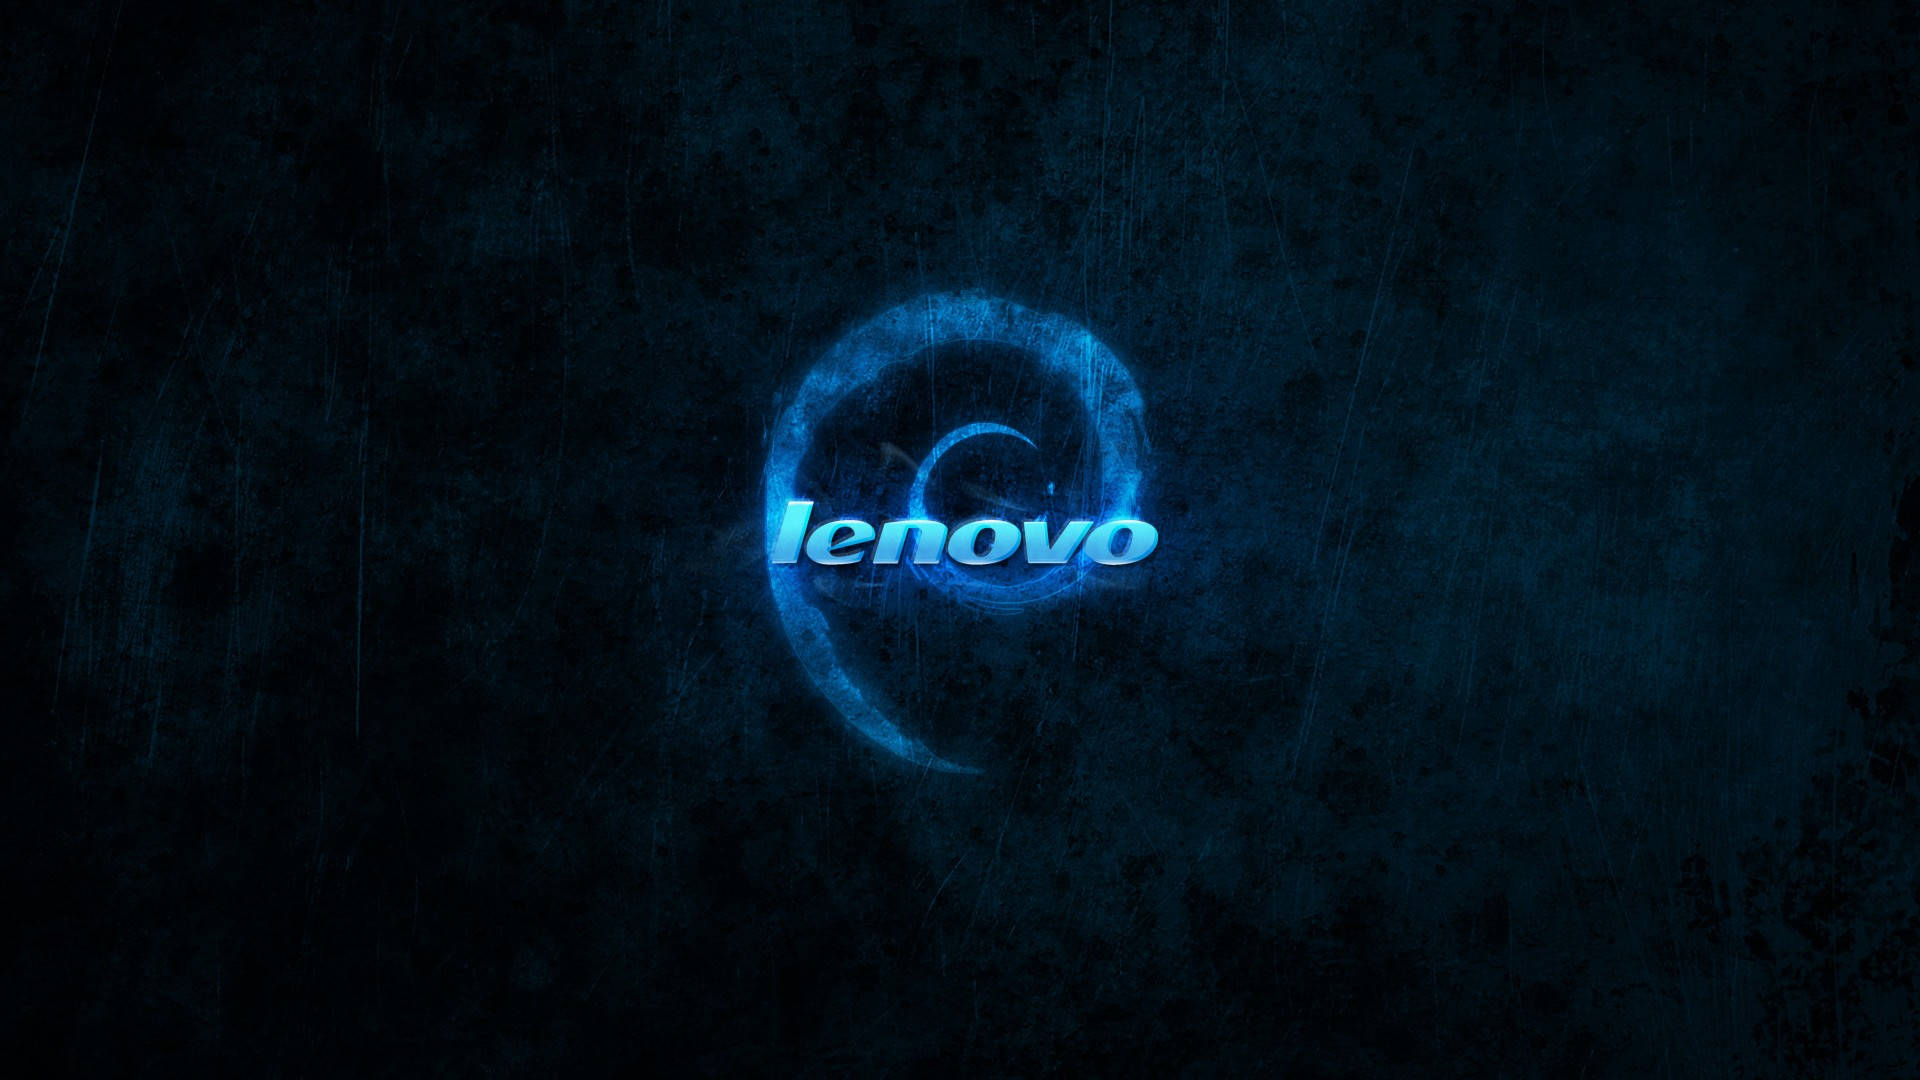 Blåvirvel Lenovo Hd. Wallpaper